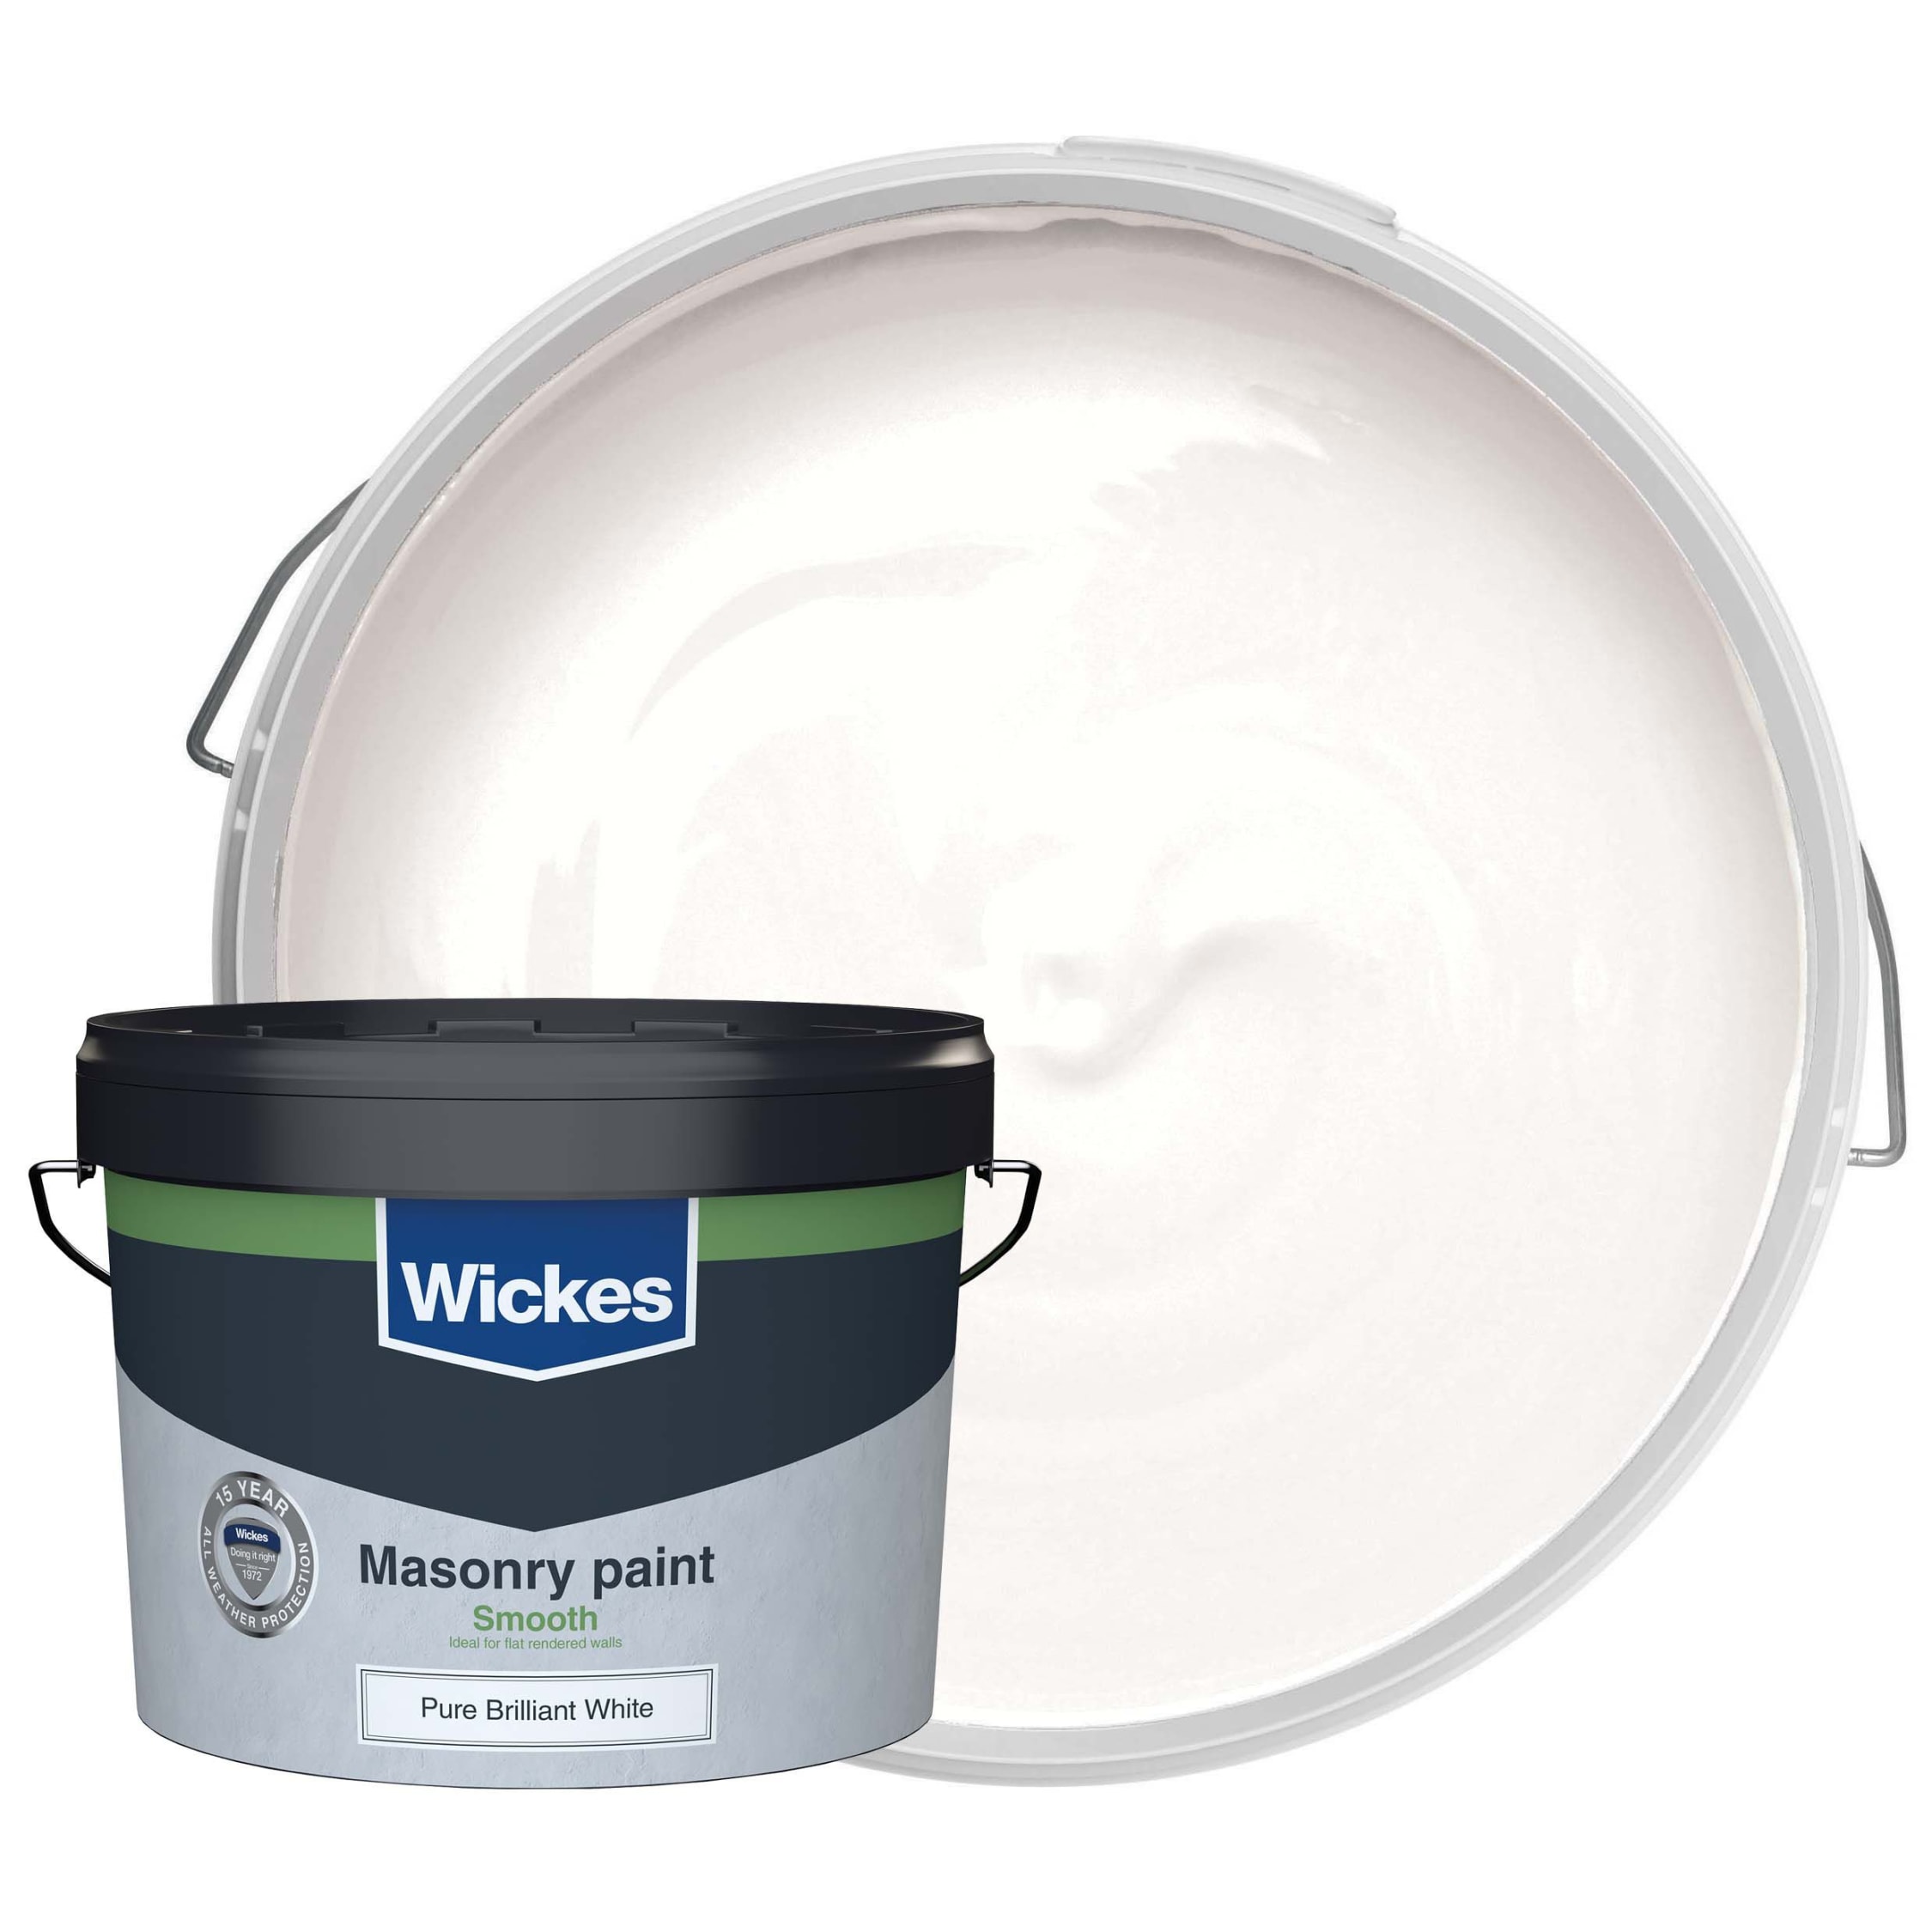 Wickes Masonry Smooth Pure Brilliant White 10L | Wickes.co.uk